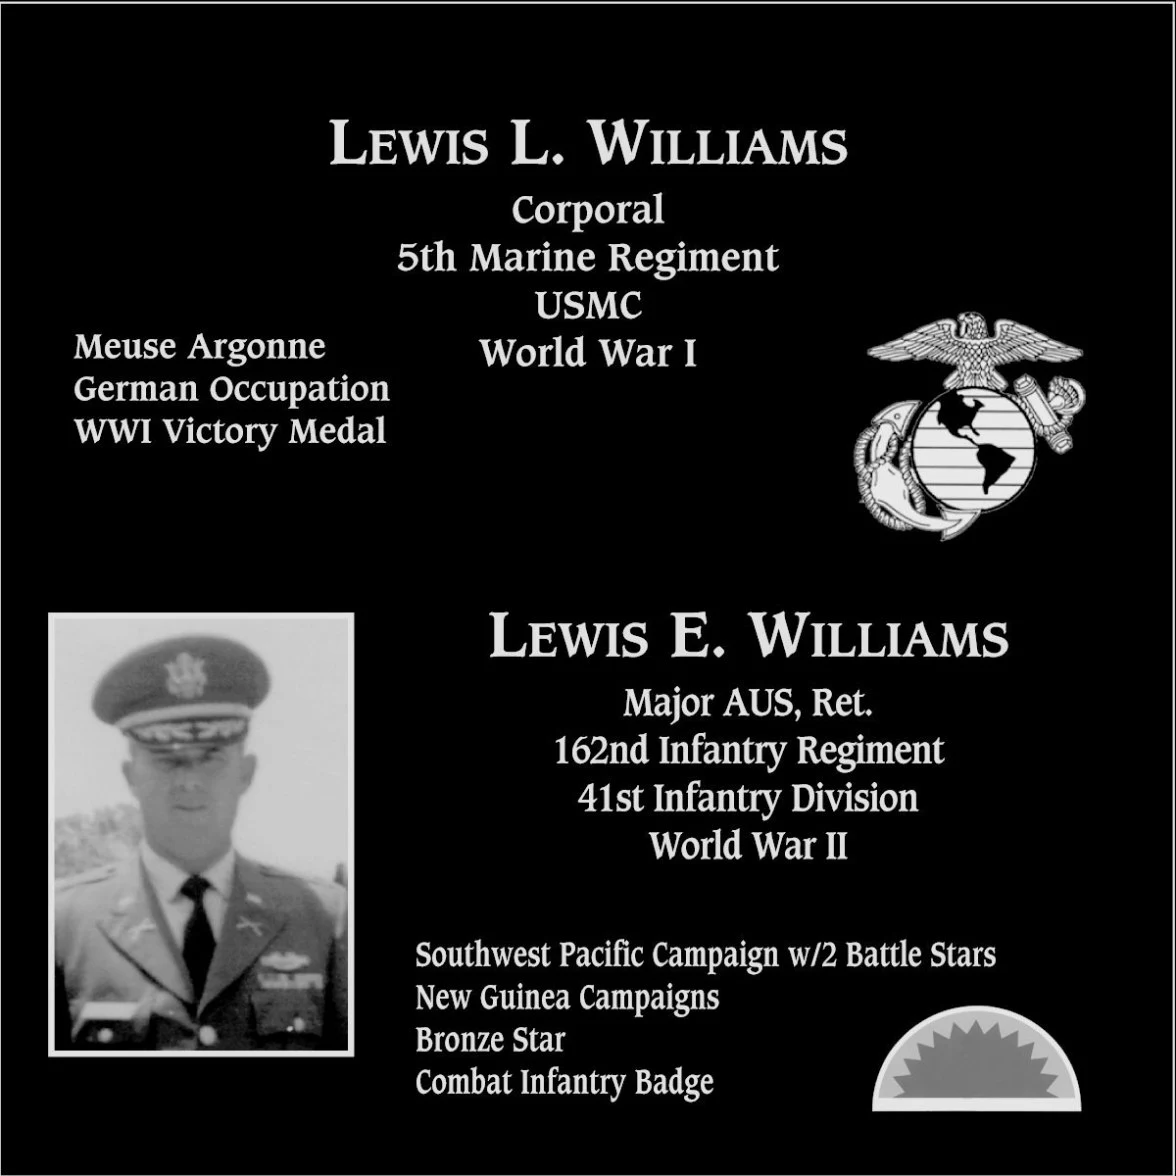 Lewis L. Williams